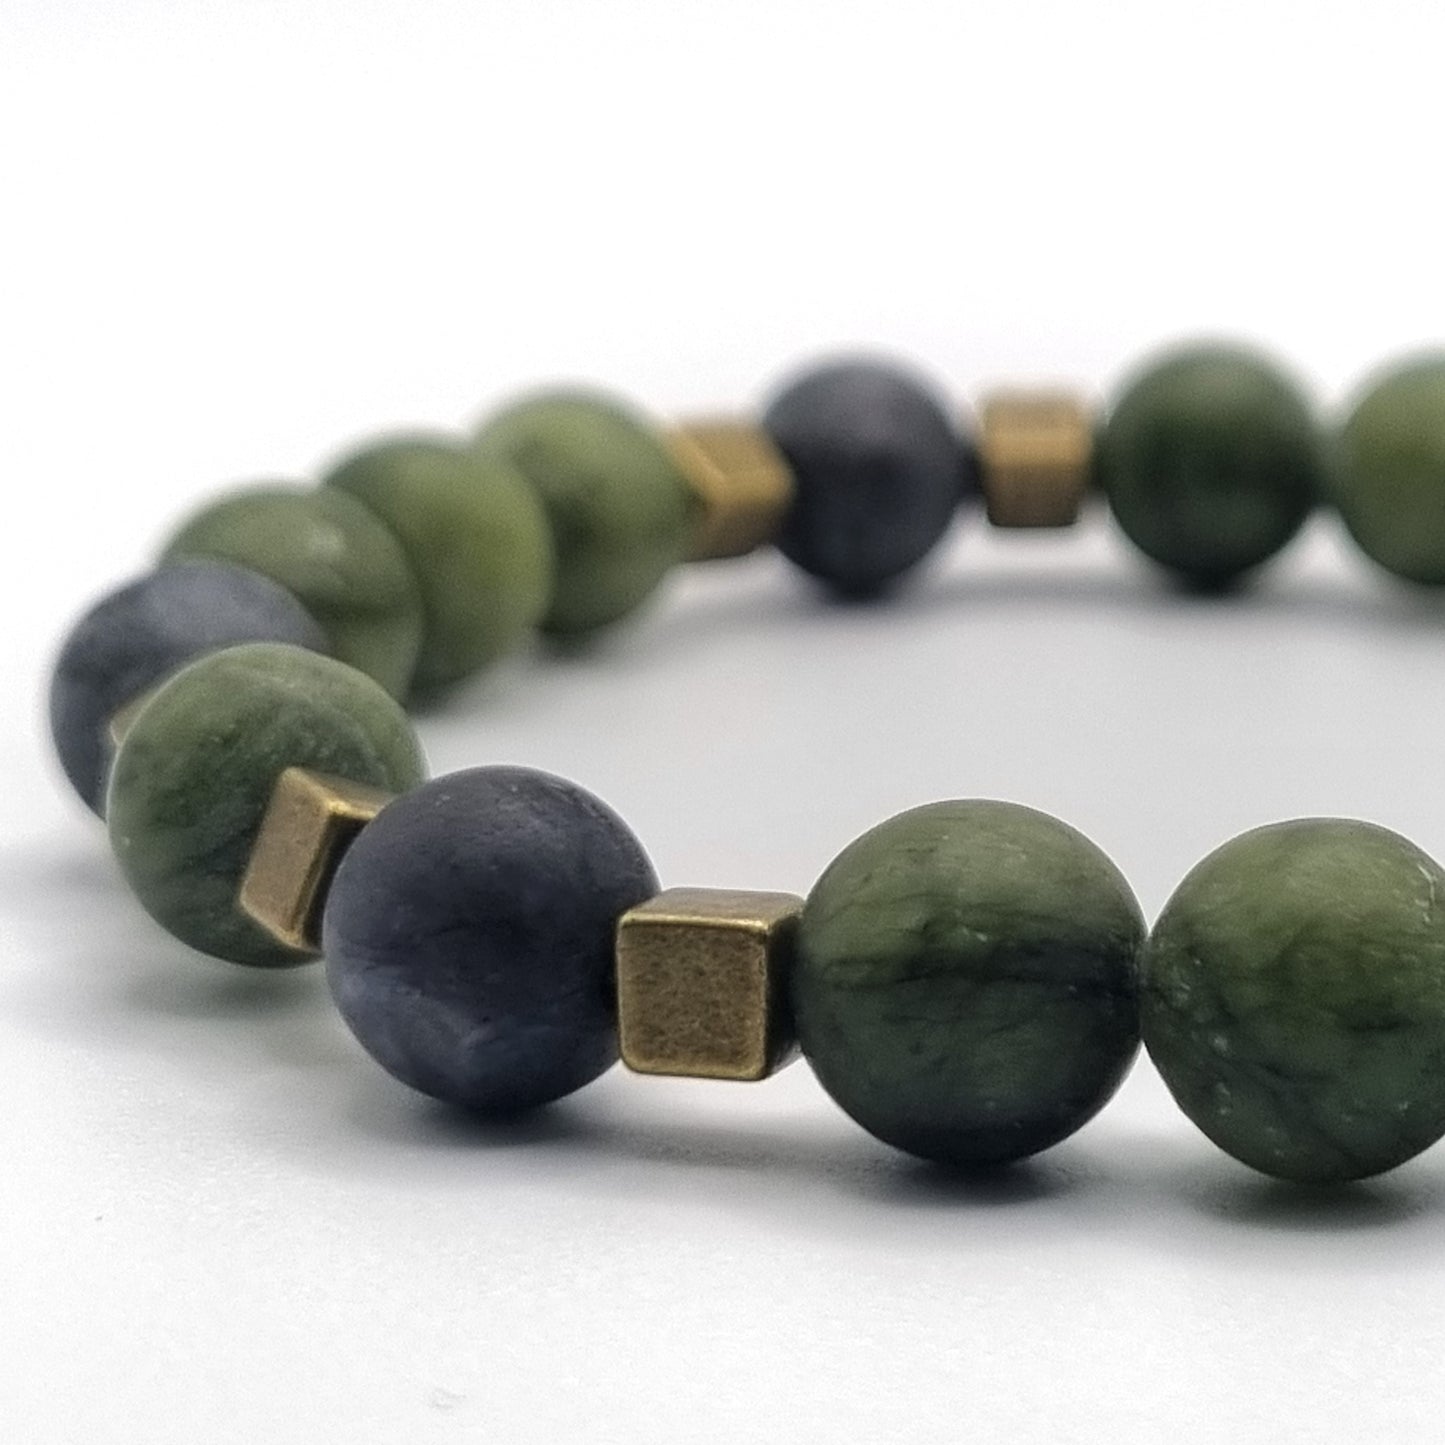 Armband mit Jade und Larvikit Perlen | ,,Ancient Forest"